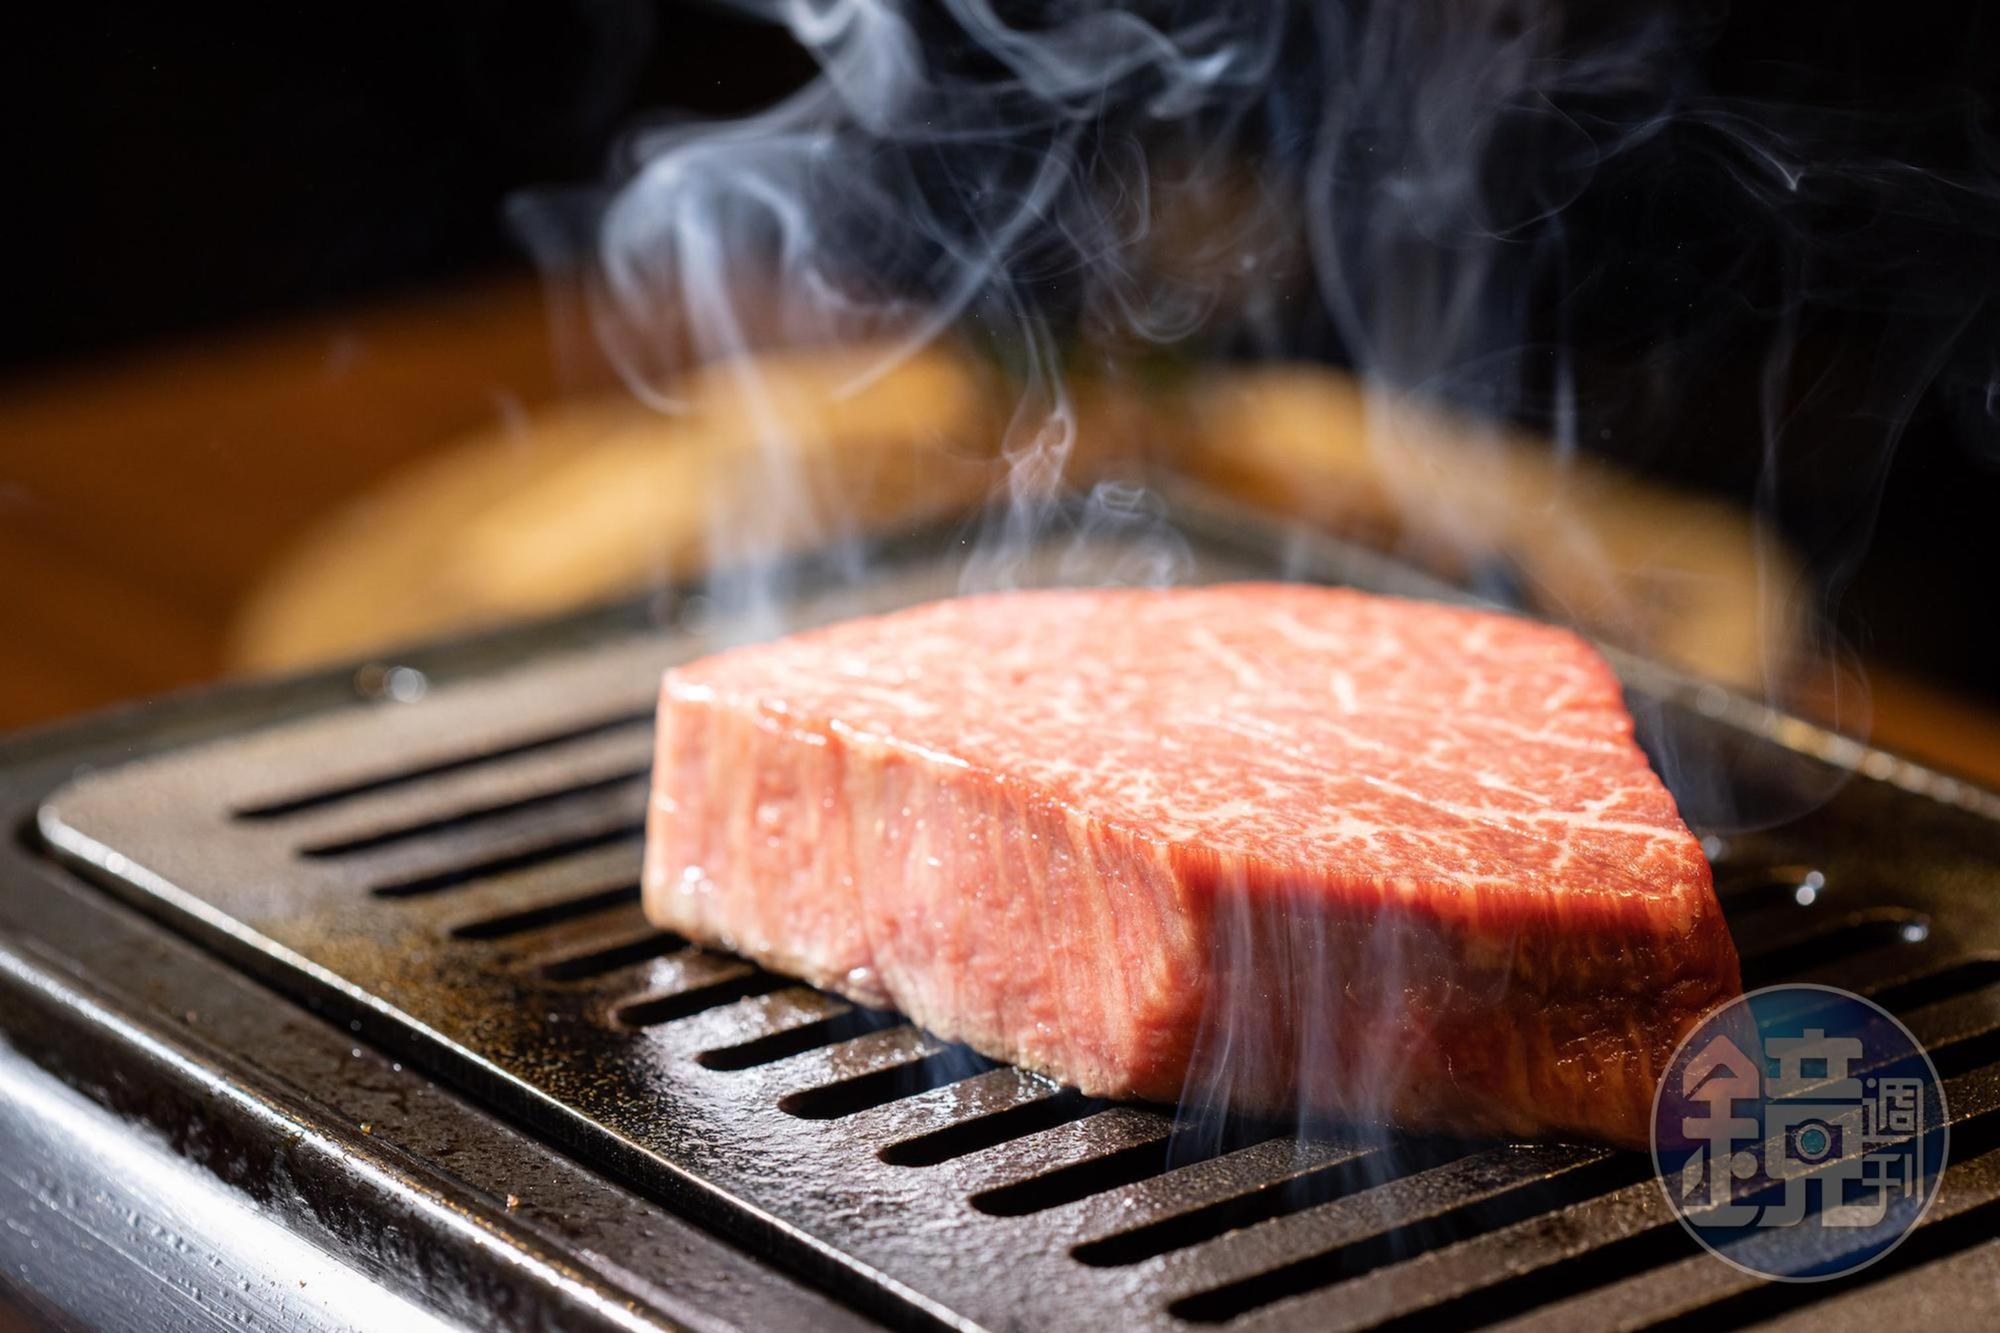 燒烤新解3 米其林星級技法俺達の肉屋把瘦肉變主流防疫期間化身外帶肉舖